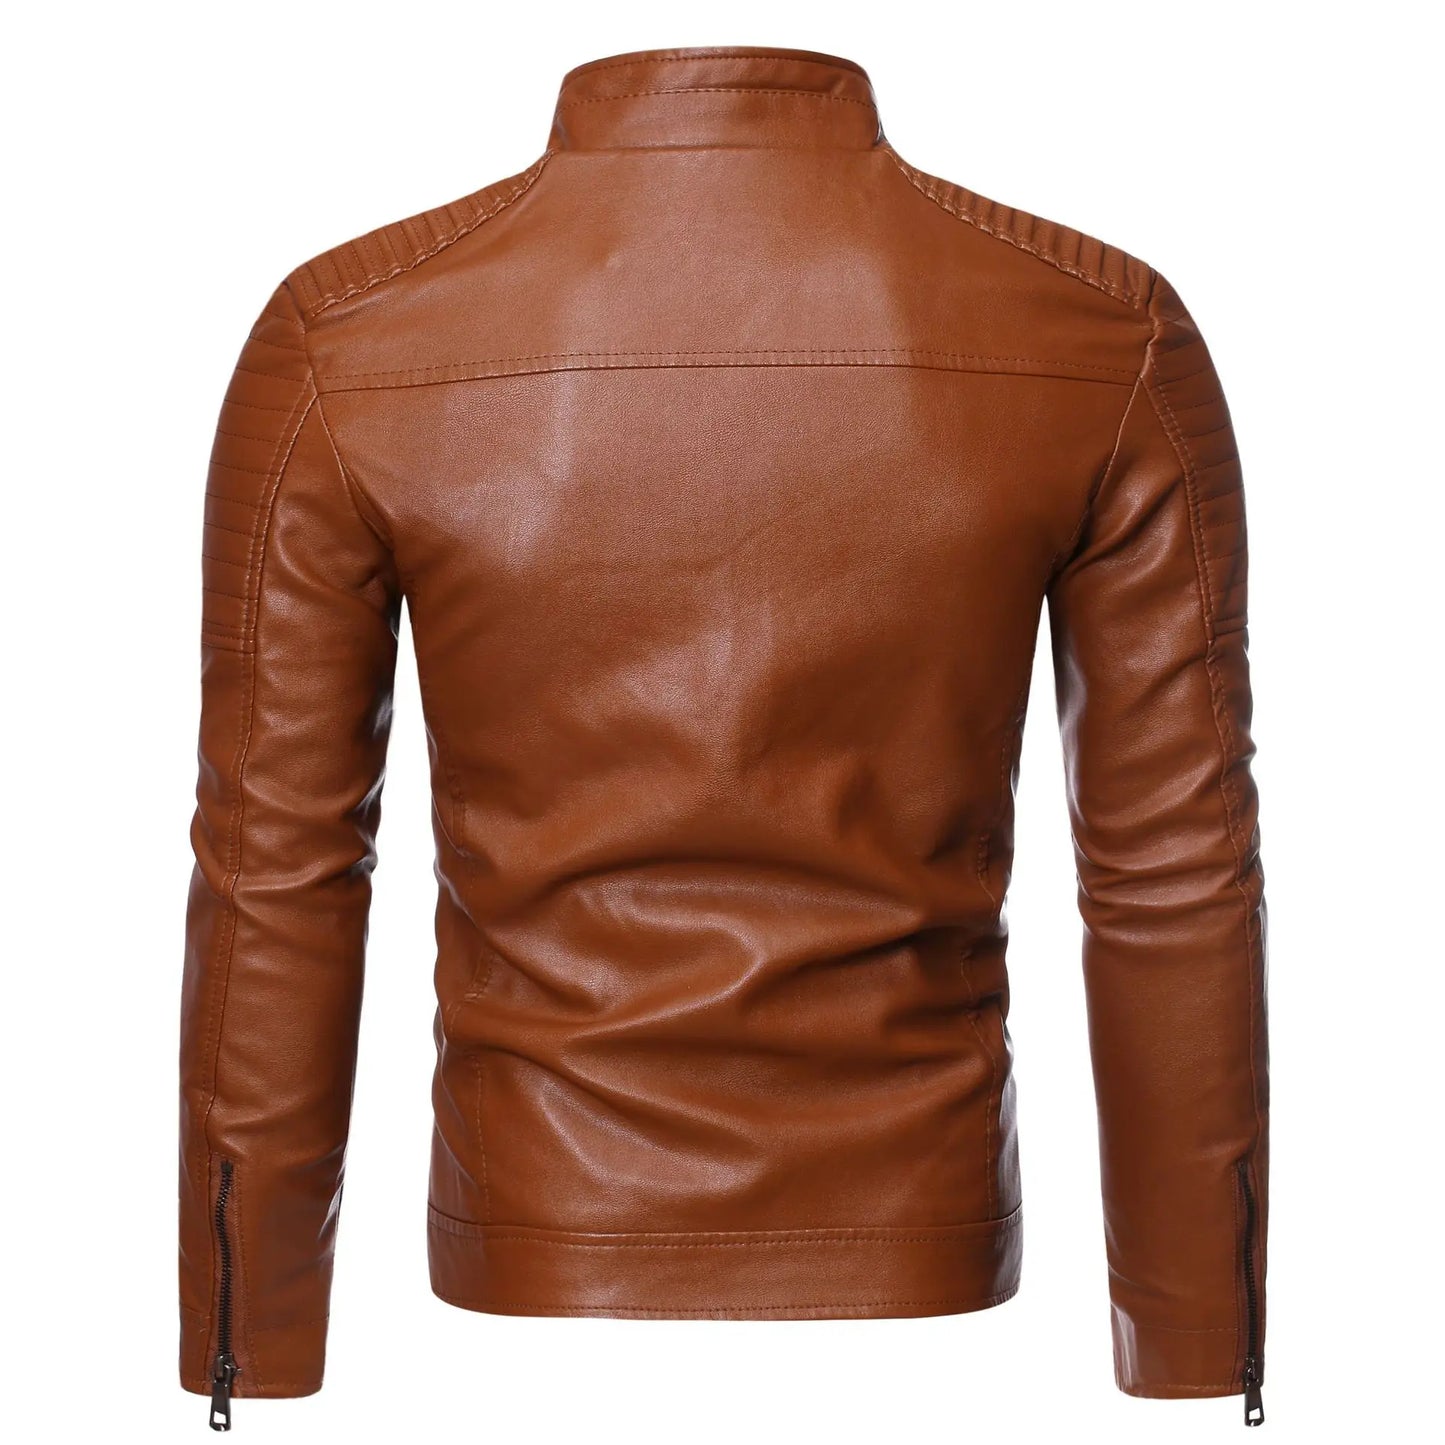 Leather Jacket Cosmoe